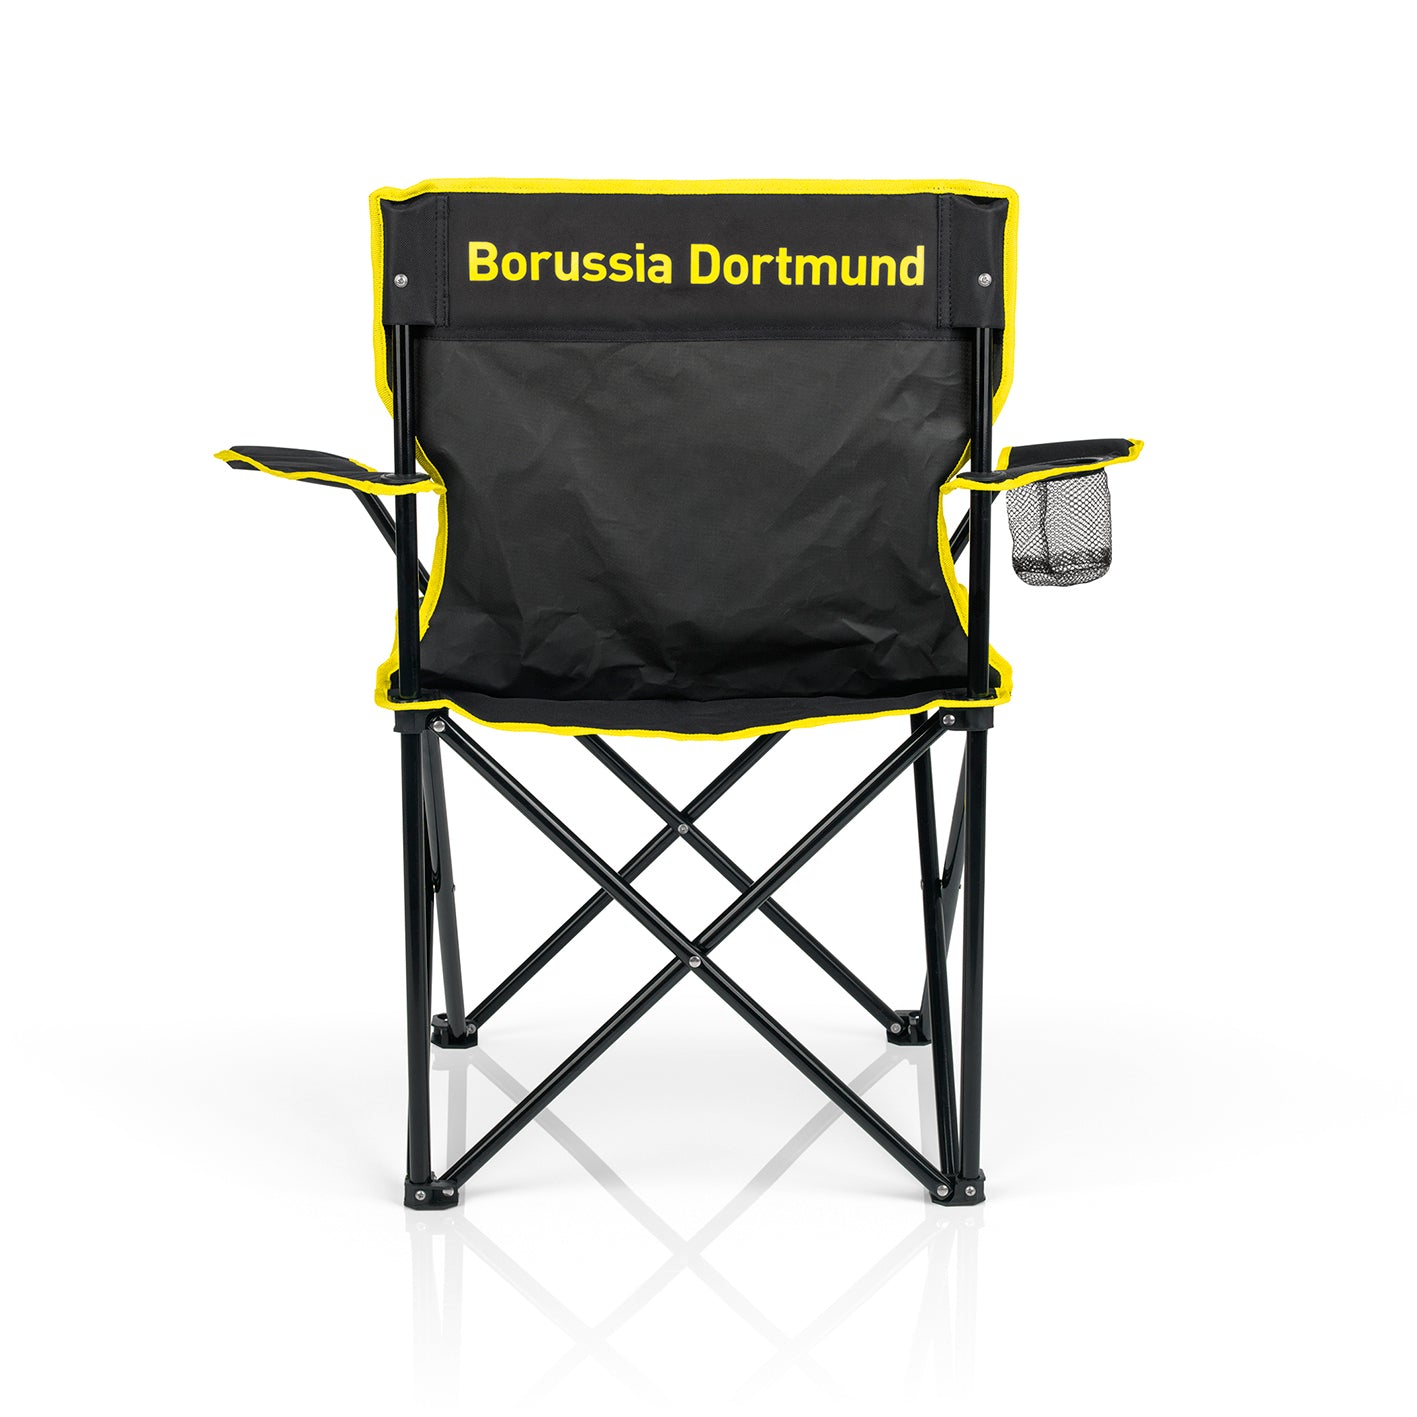 Campingstuhl faltbar - 80x50 cm - schwarz/gelb mit Logo